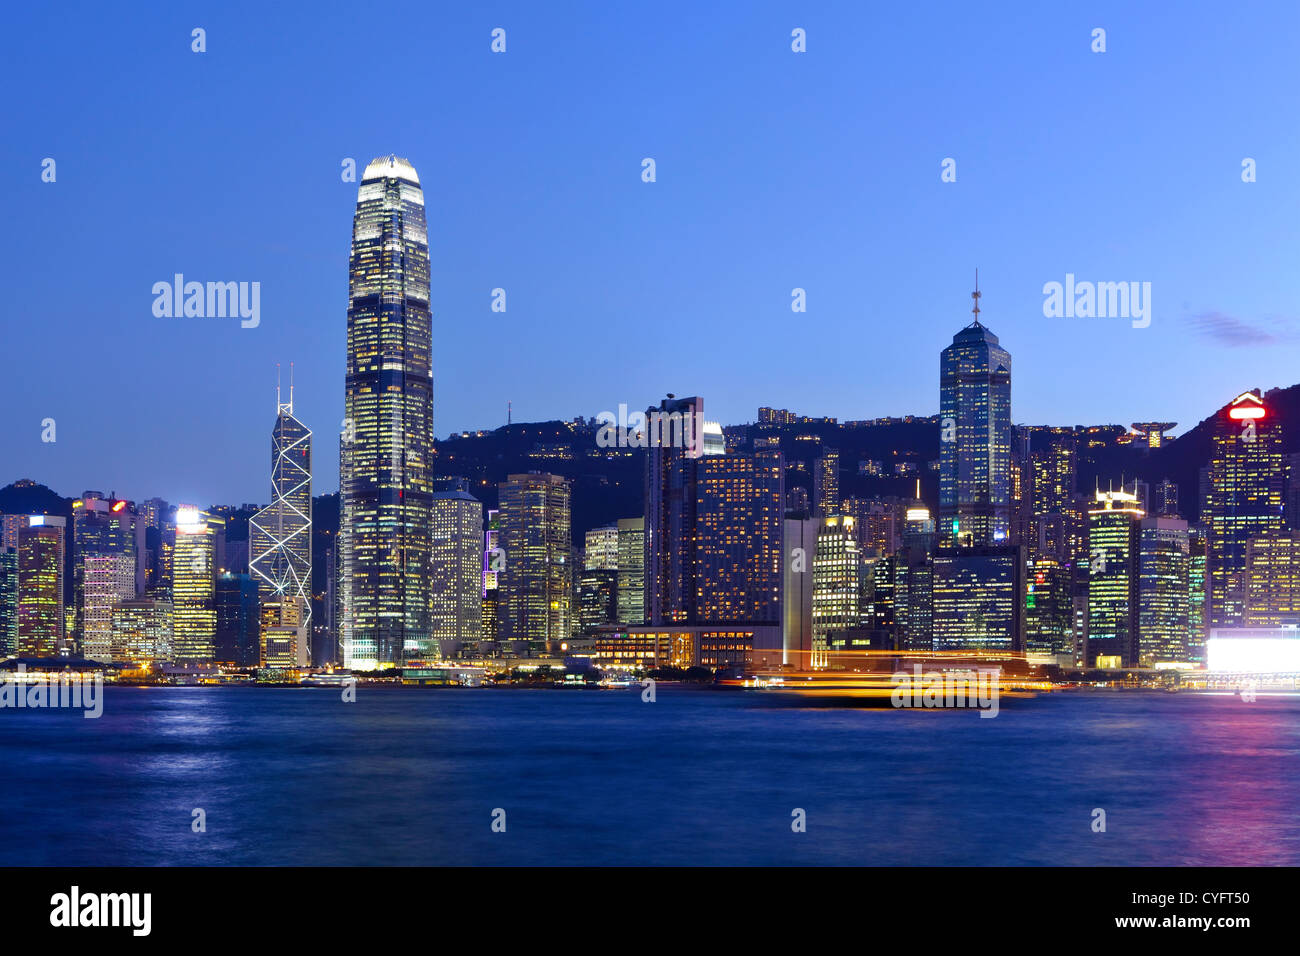 Hong Kong at night Stock Photo - Alamy